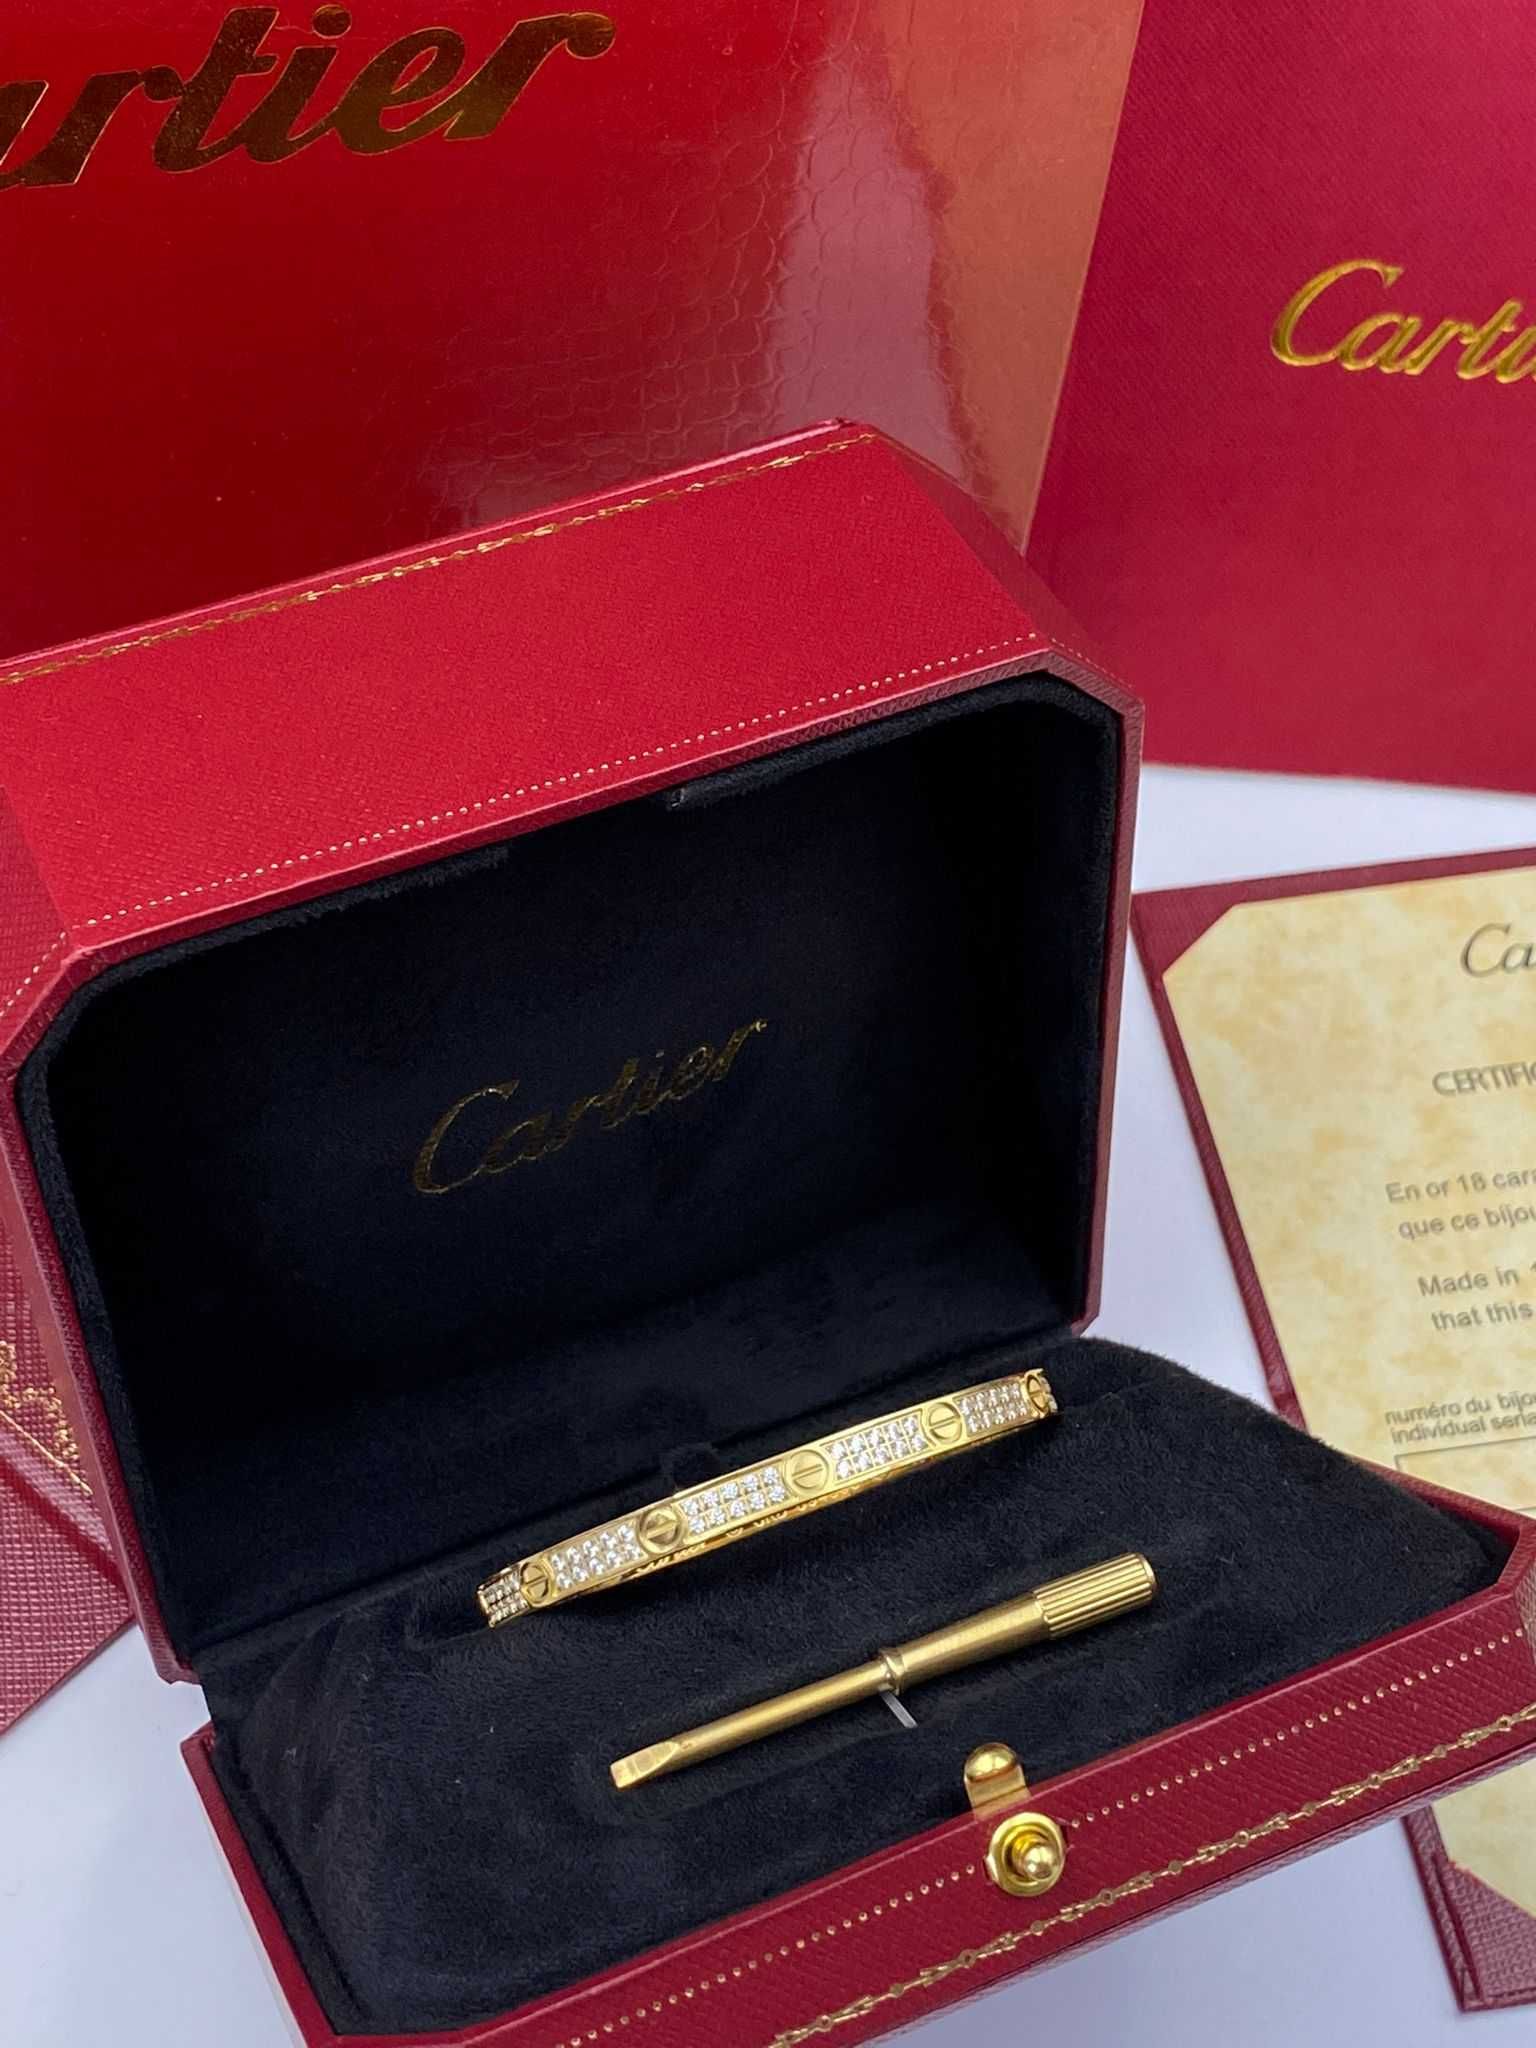 Brățară Cartier LOVE 16 Gold 18K Small Diamonds